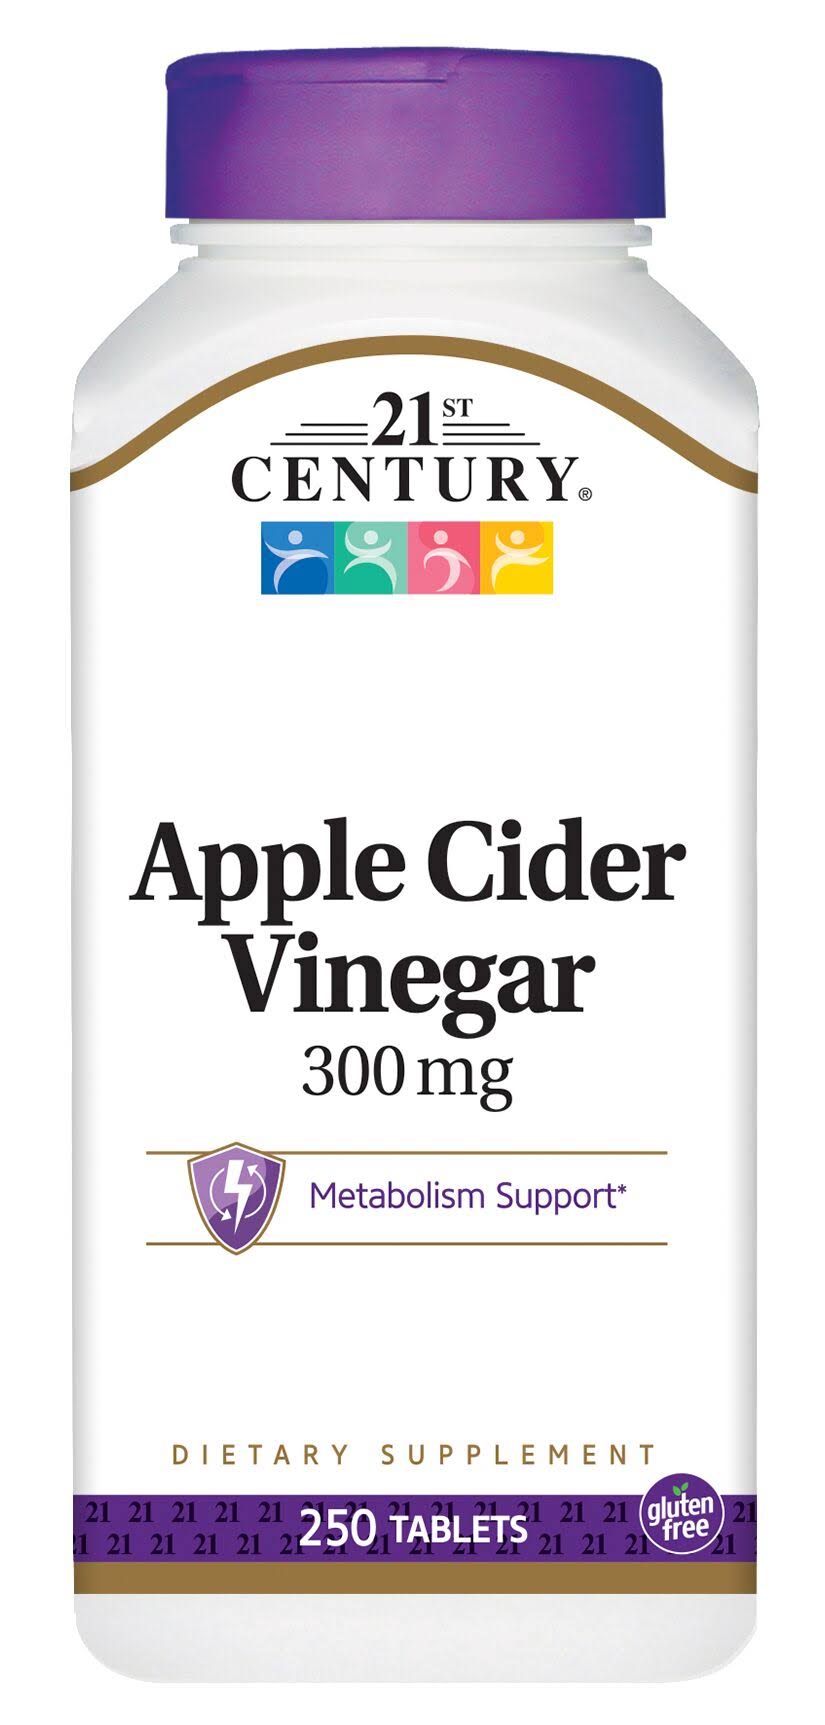 21st Century Apple Cider Vinegar - 300mg, 250 Tablets